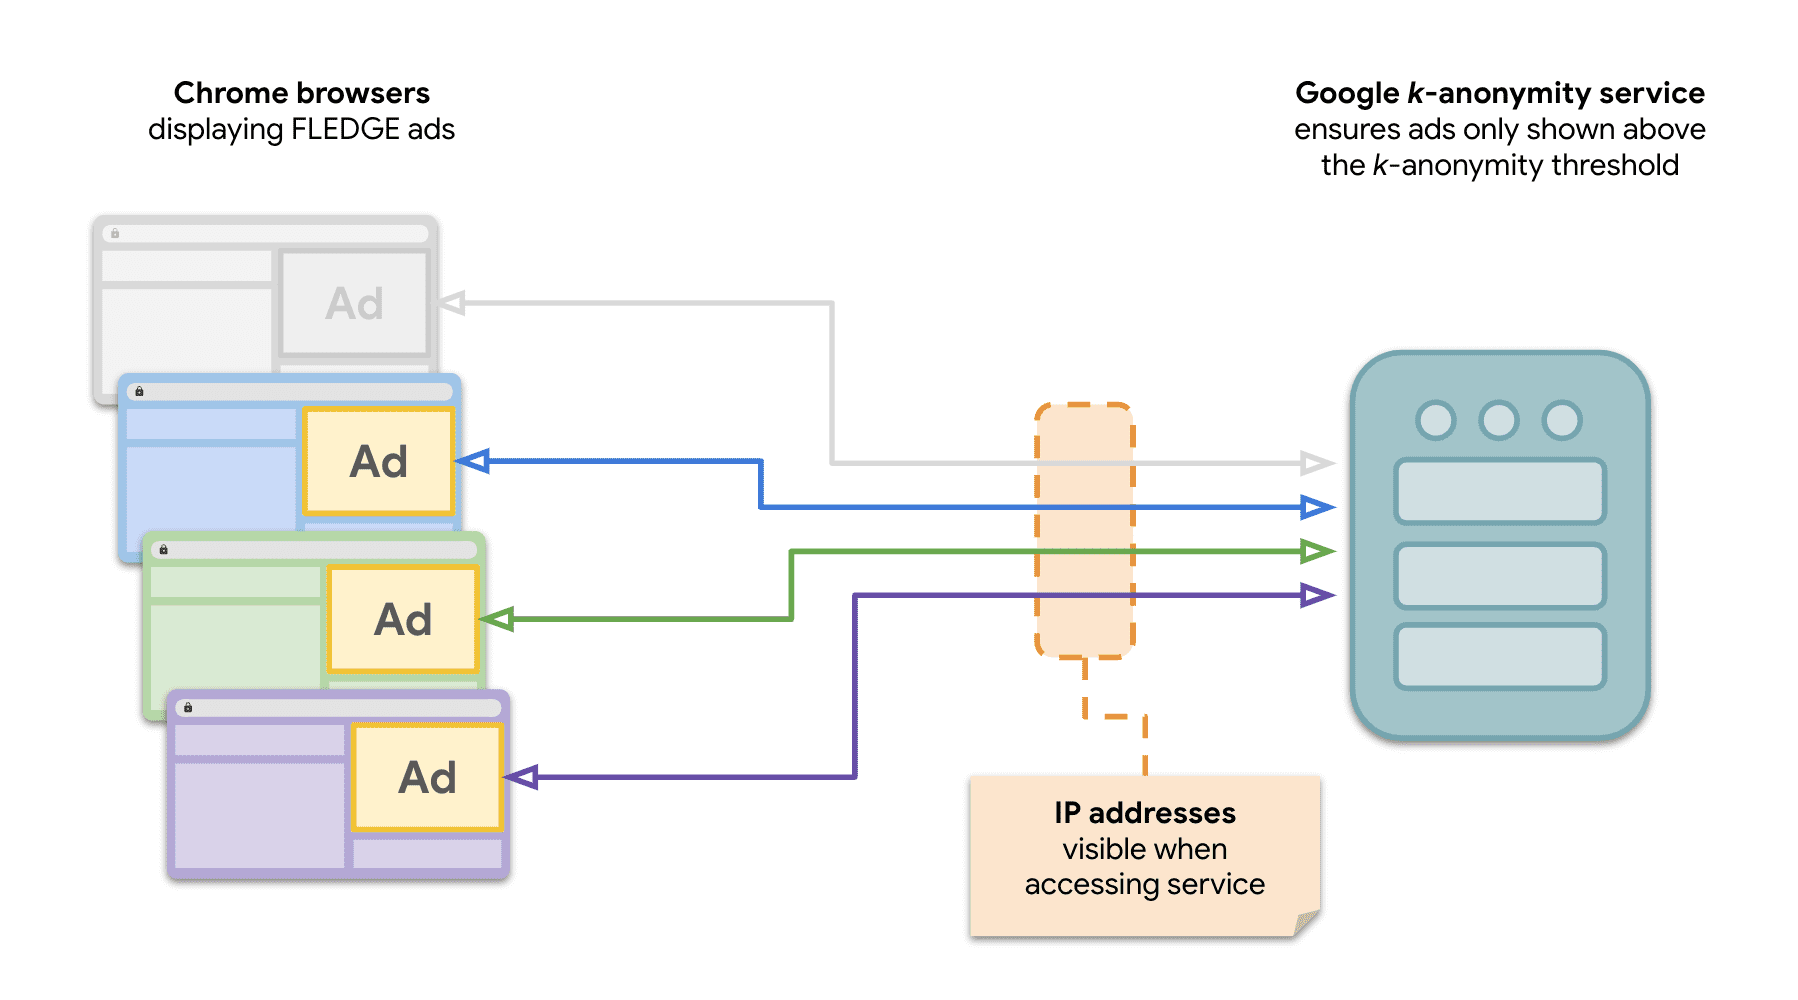 圖表顯示 Chrome 中有多個網站向 k-anonymity 伺服器傳送要求，以便放送 FLEDGE 廣告。